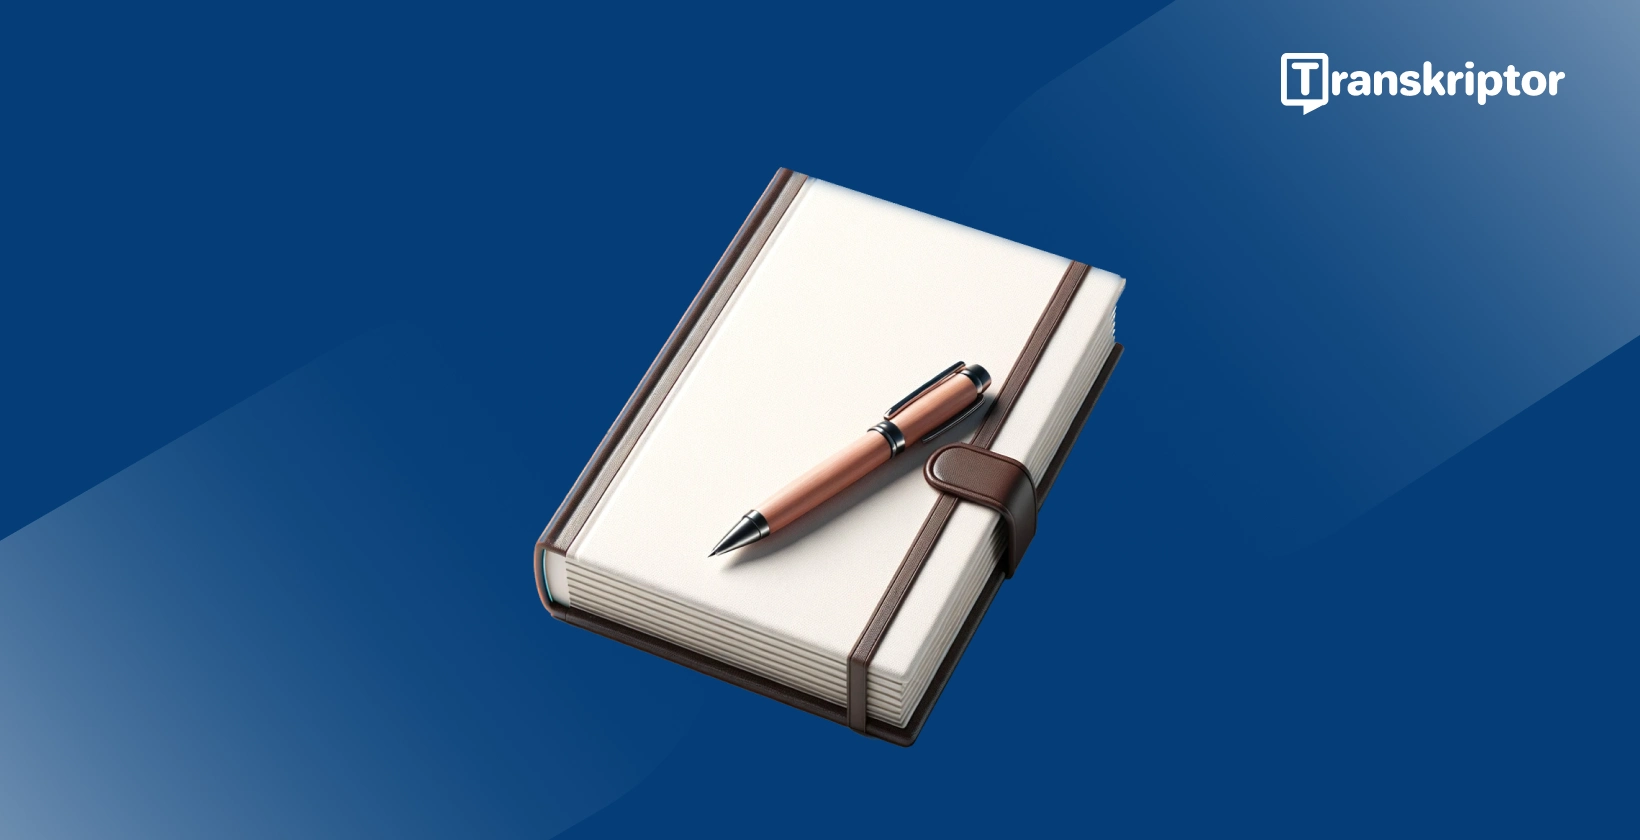 Dikteringssoftware til forfattere, der viser en notesbog og pen, symboliserer skriveværktøjer.